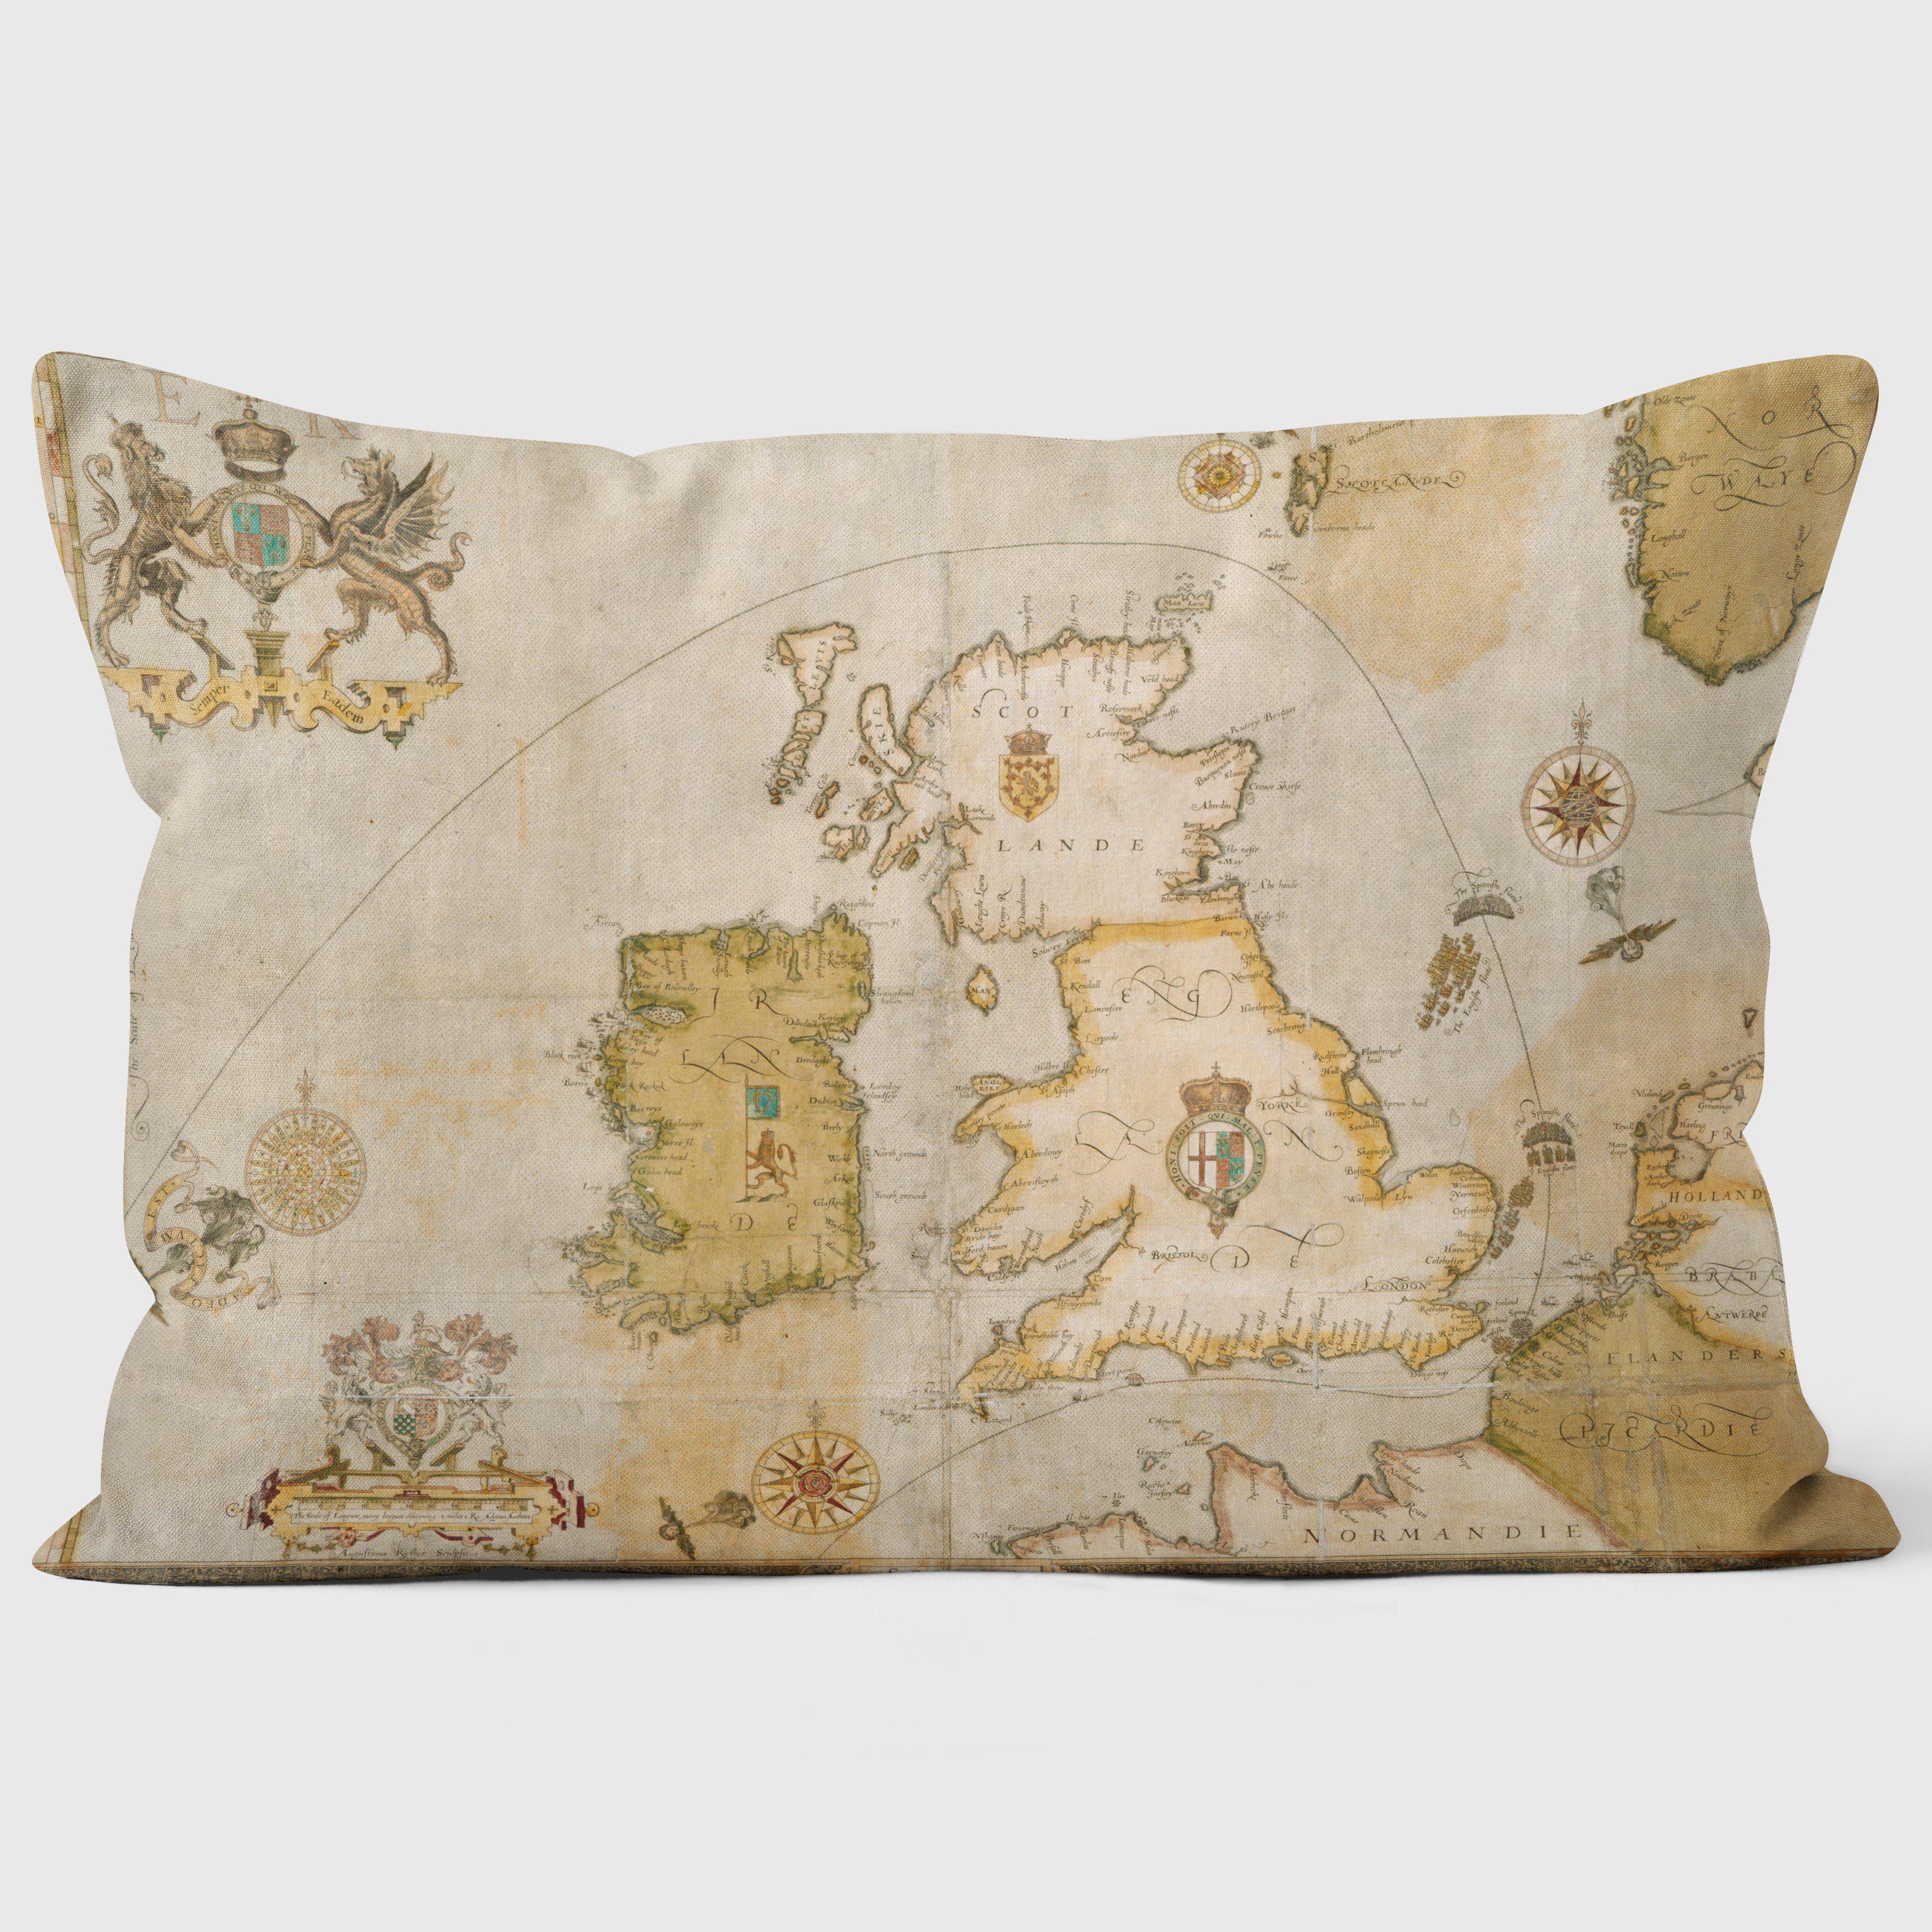 1588 Spanish Armada Map - British Library Cushions - Handmade Cushions UK - WeLoveCushions